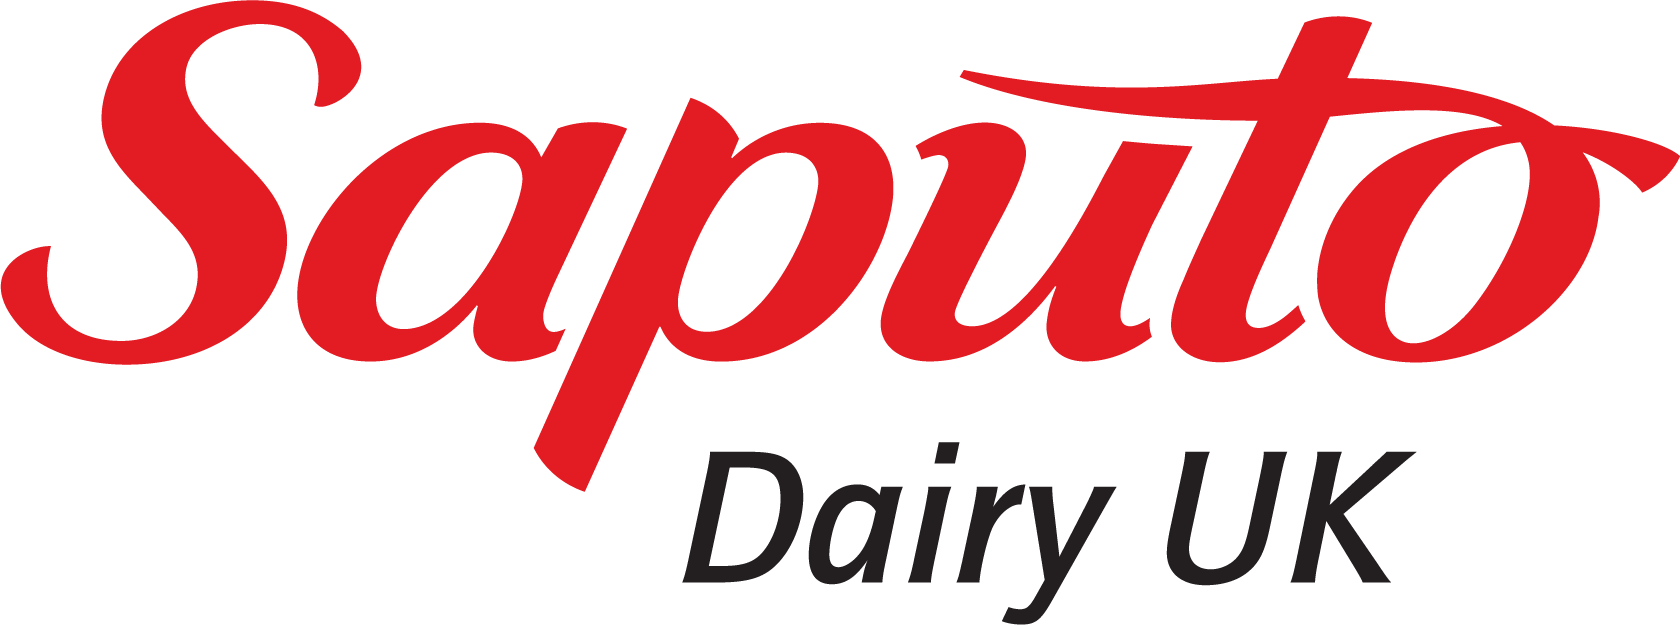 Logo_SaputoDairy-UK_RGB